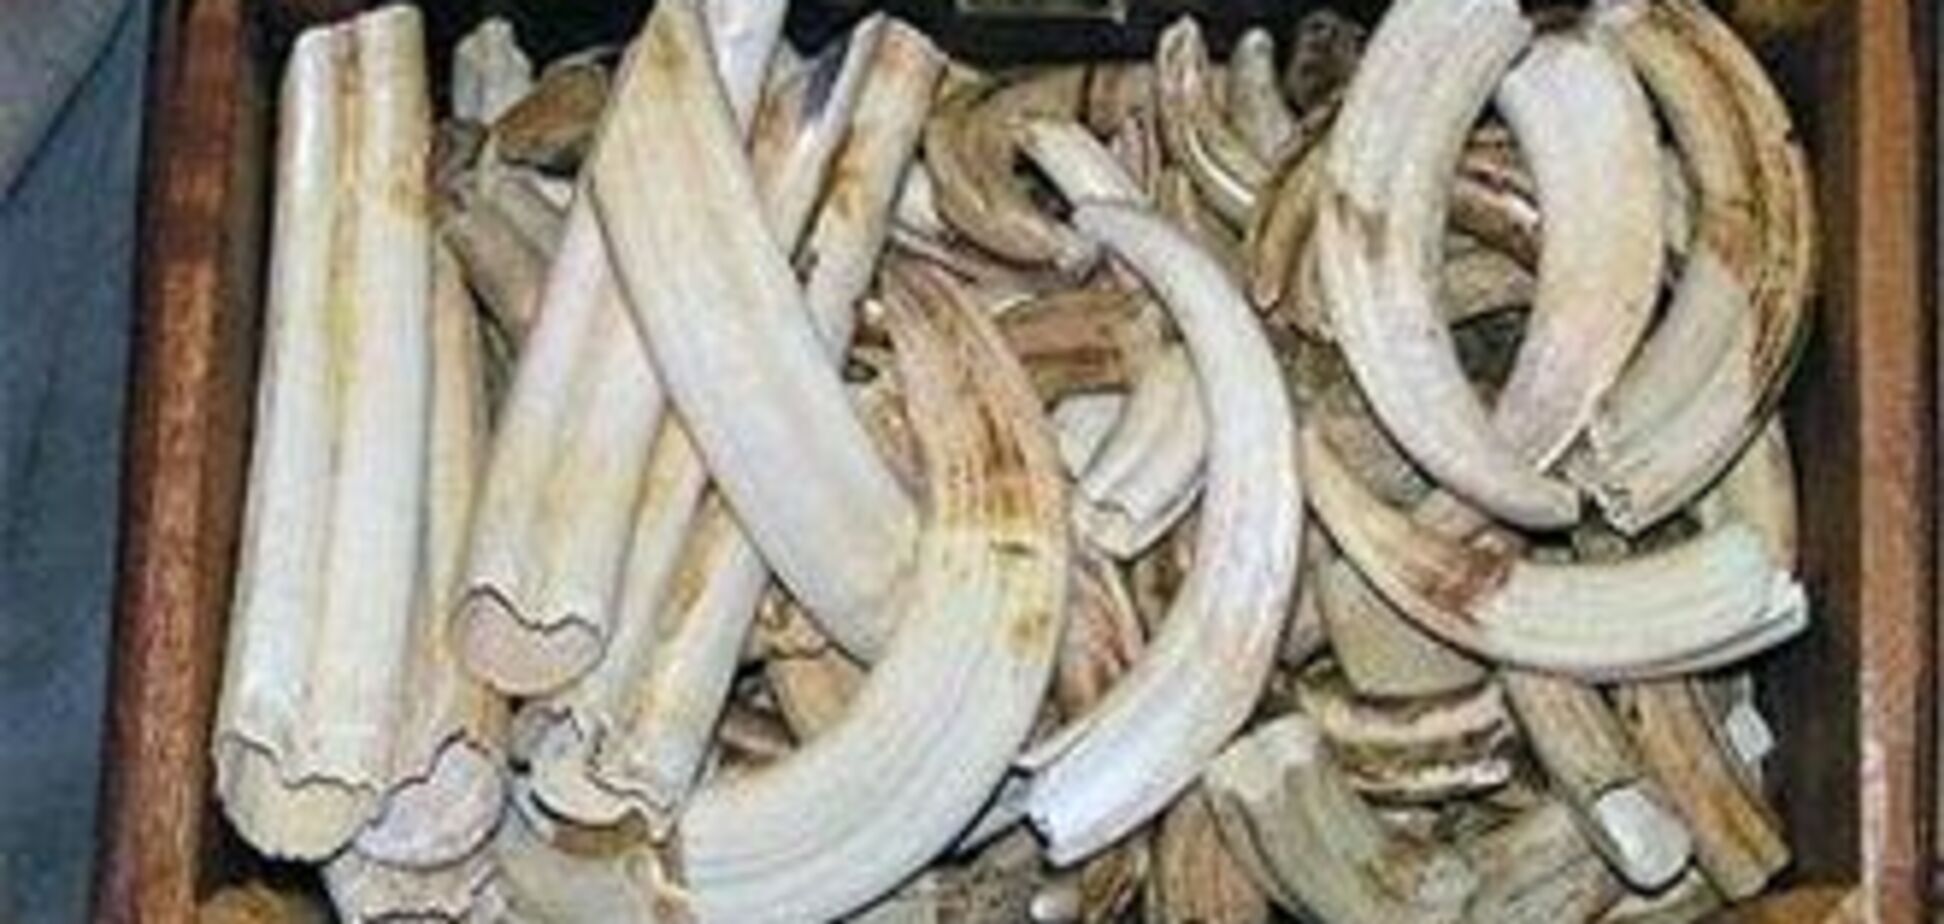 Пограничники задержали две тонны слоновой кости